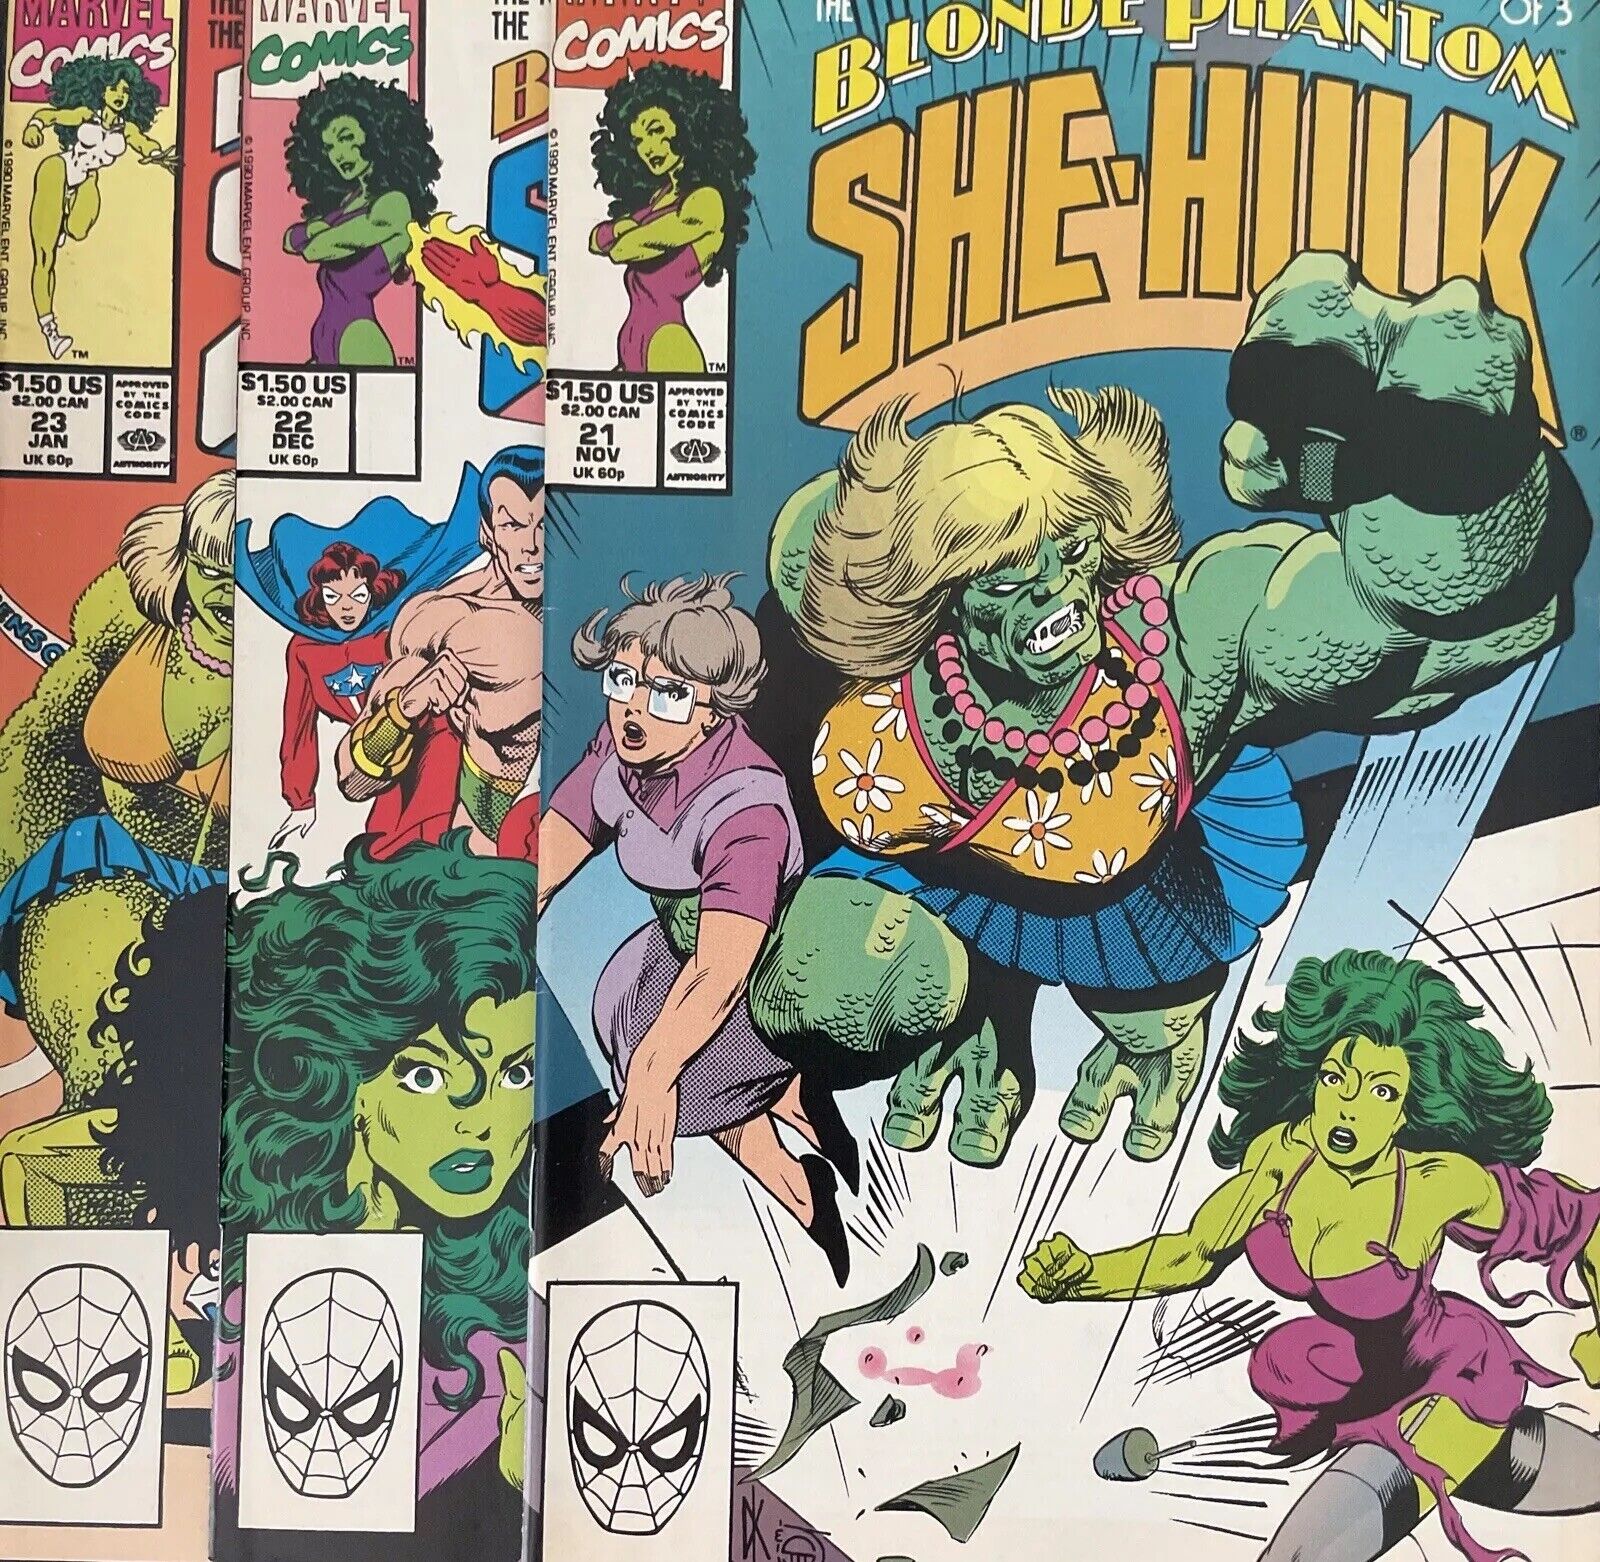 Sensational She-Hulk #21 22 & 23 (Marvel) Lot Of 3 Comics Blonde Phantom Saga